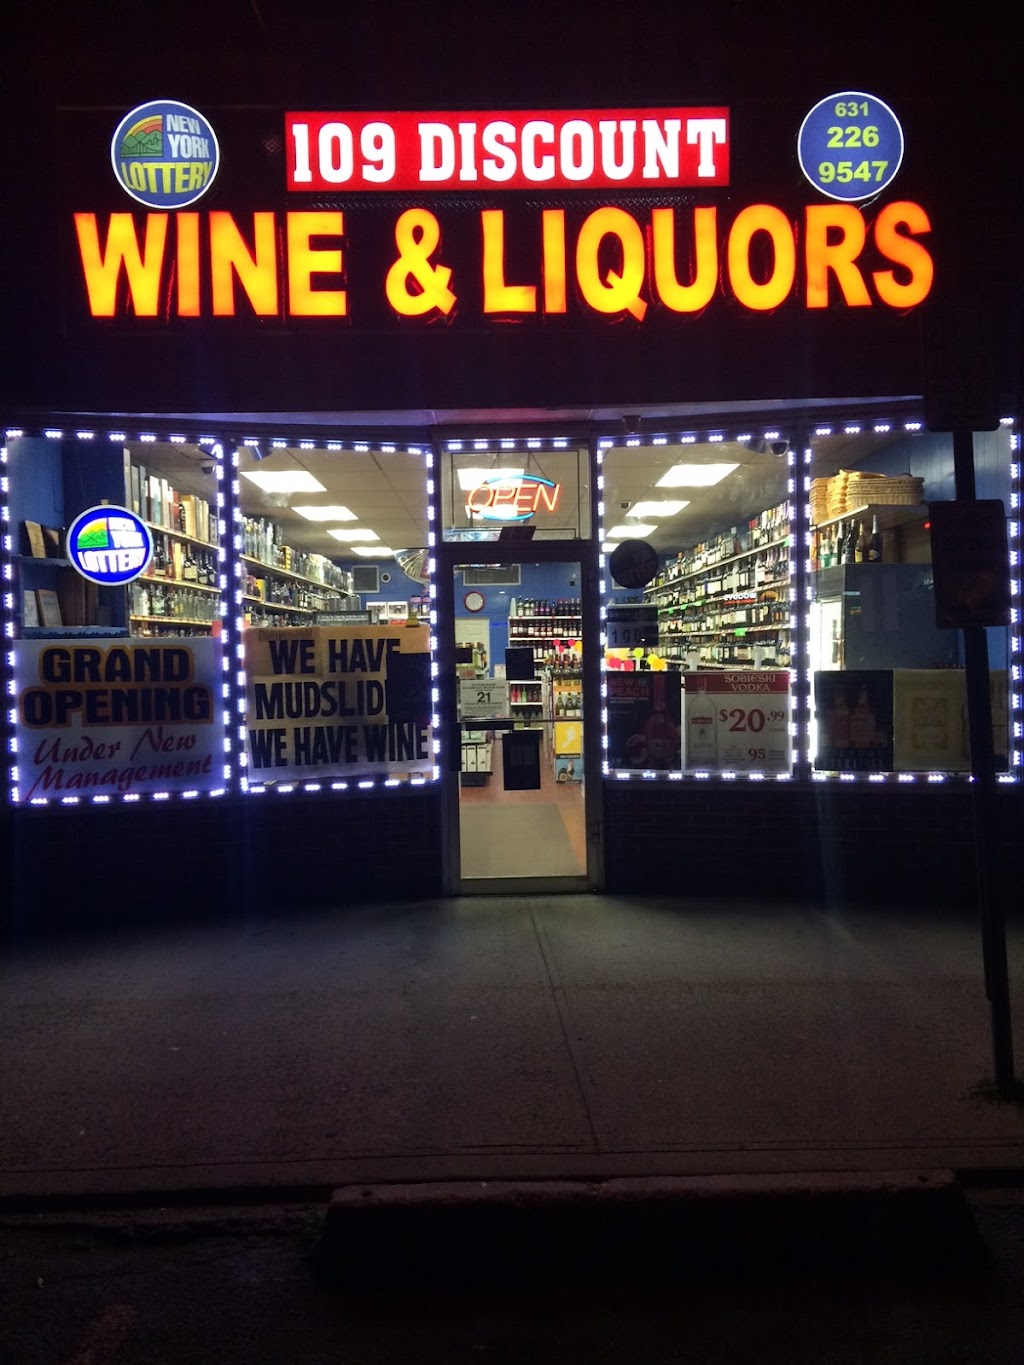 109 Discount Liquors | 652 NY-109, Lindenhurst, NY 11757 | Phone: (631) 226-9547